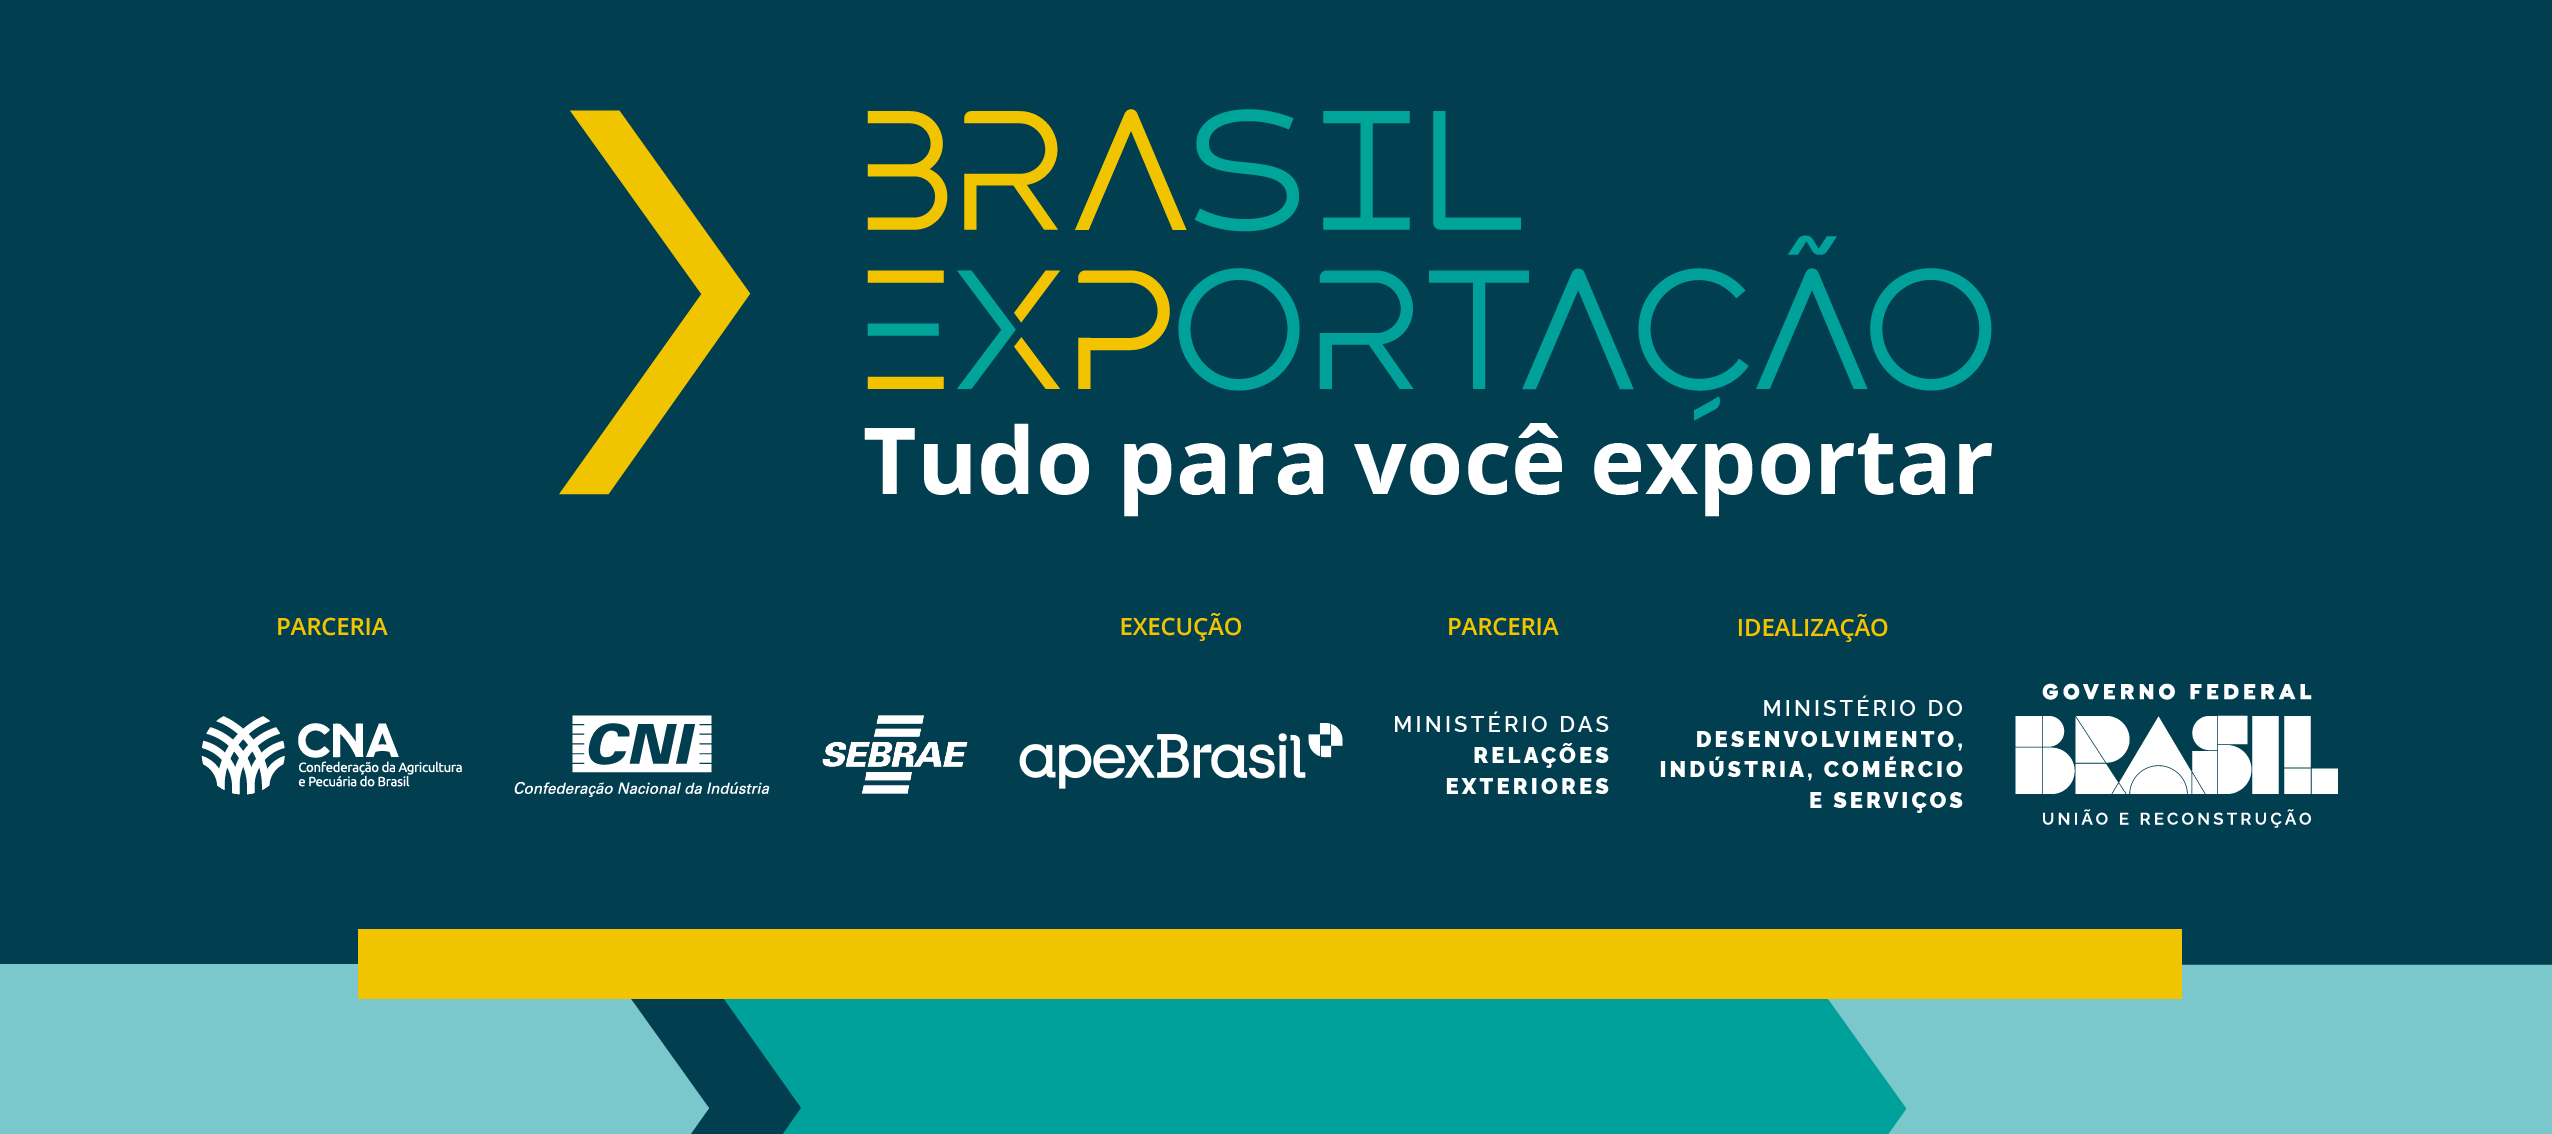 Plataforma Brasil Exportação é lançada no Web Summit em Portugal - Plataforma  Brasil Exportação